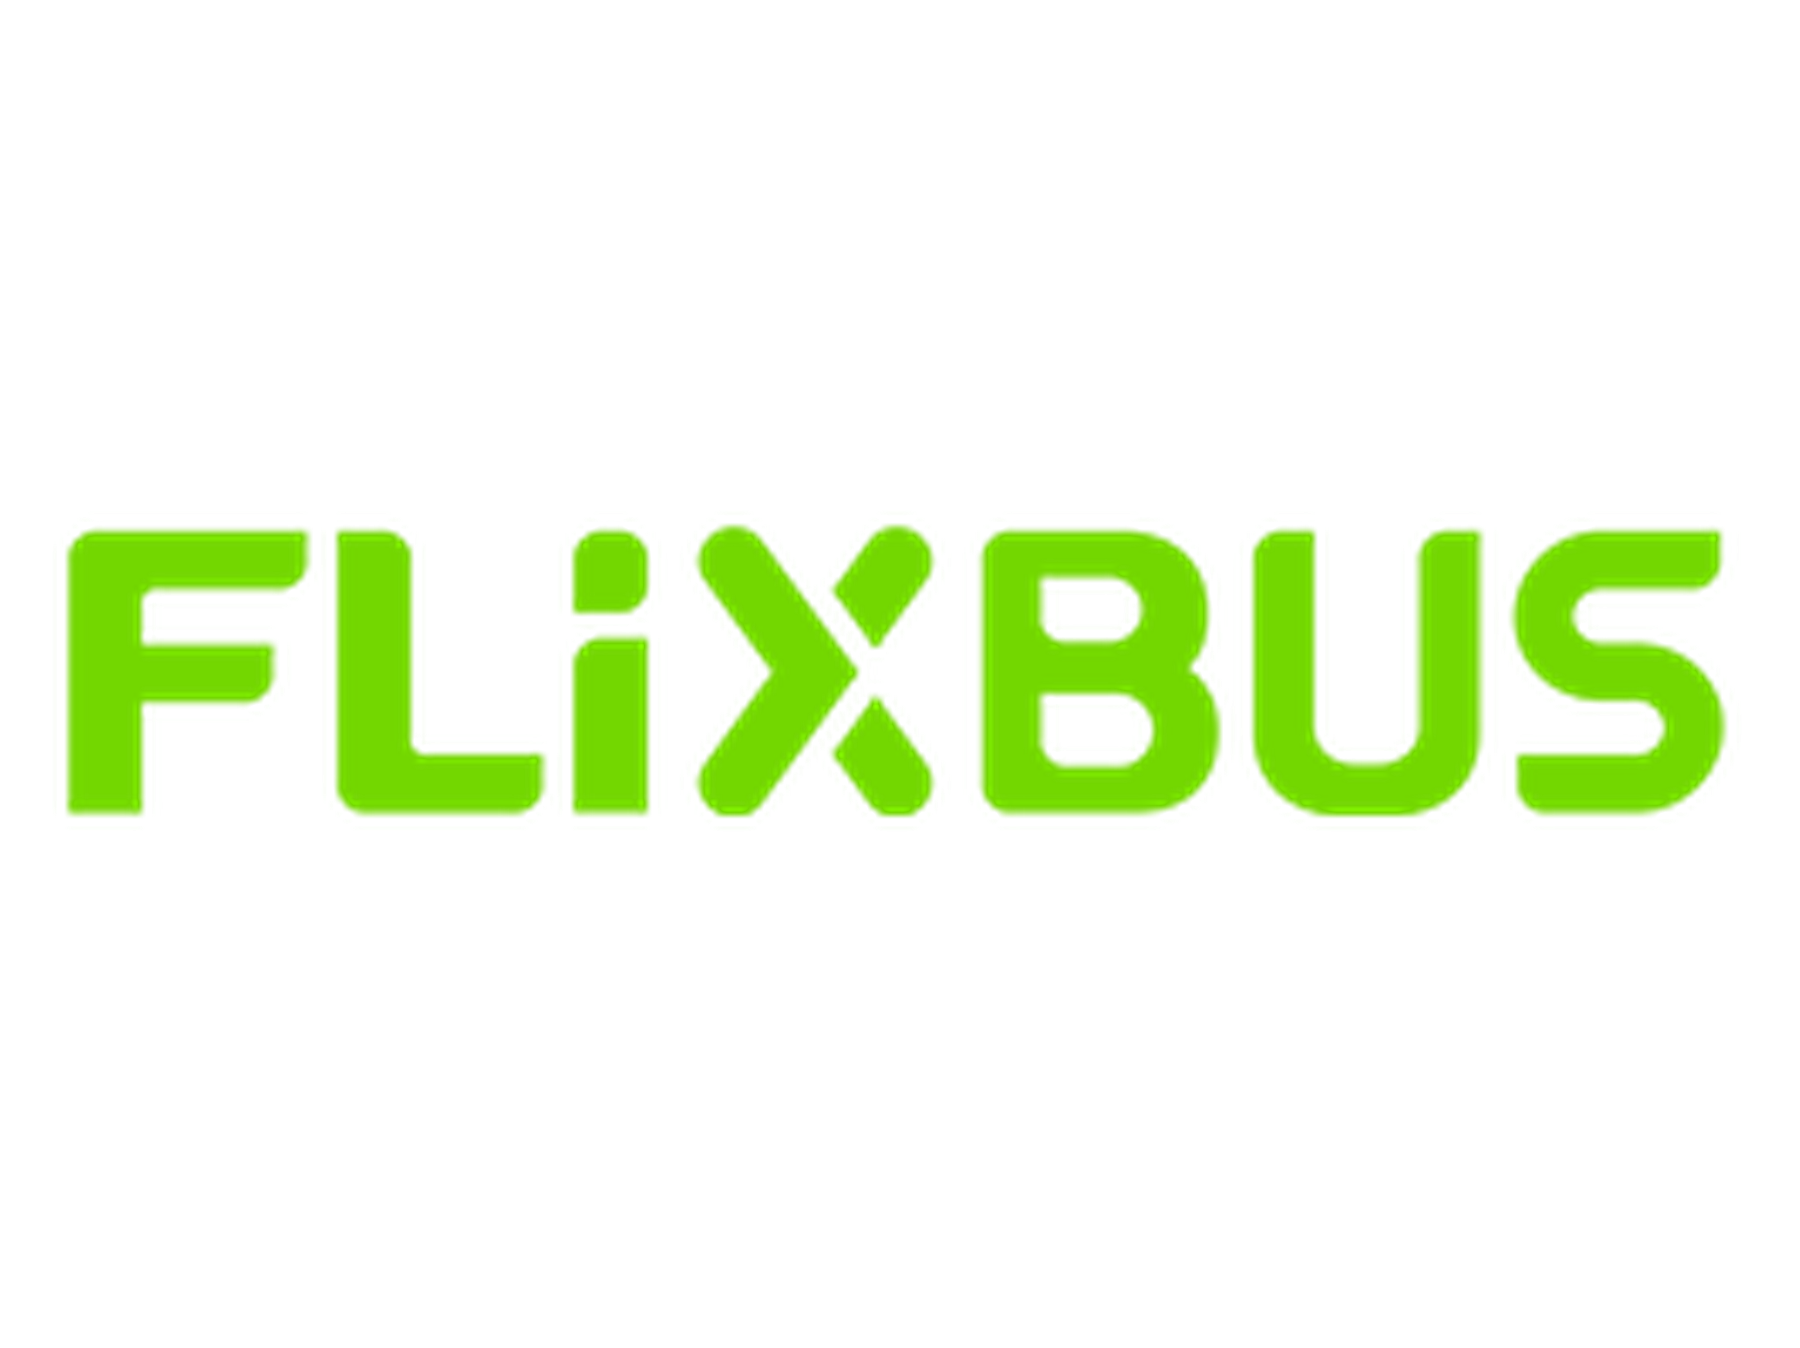 Flixbus rabattkod